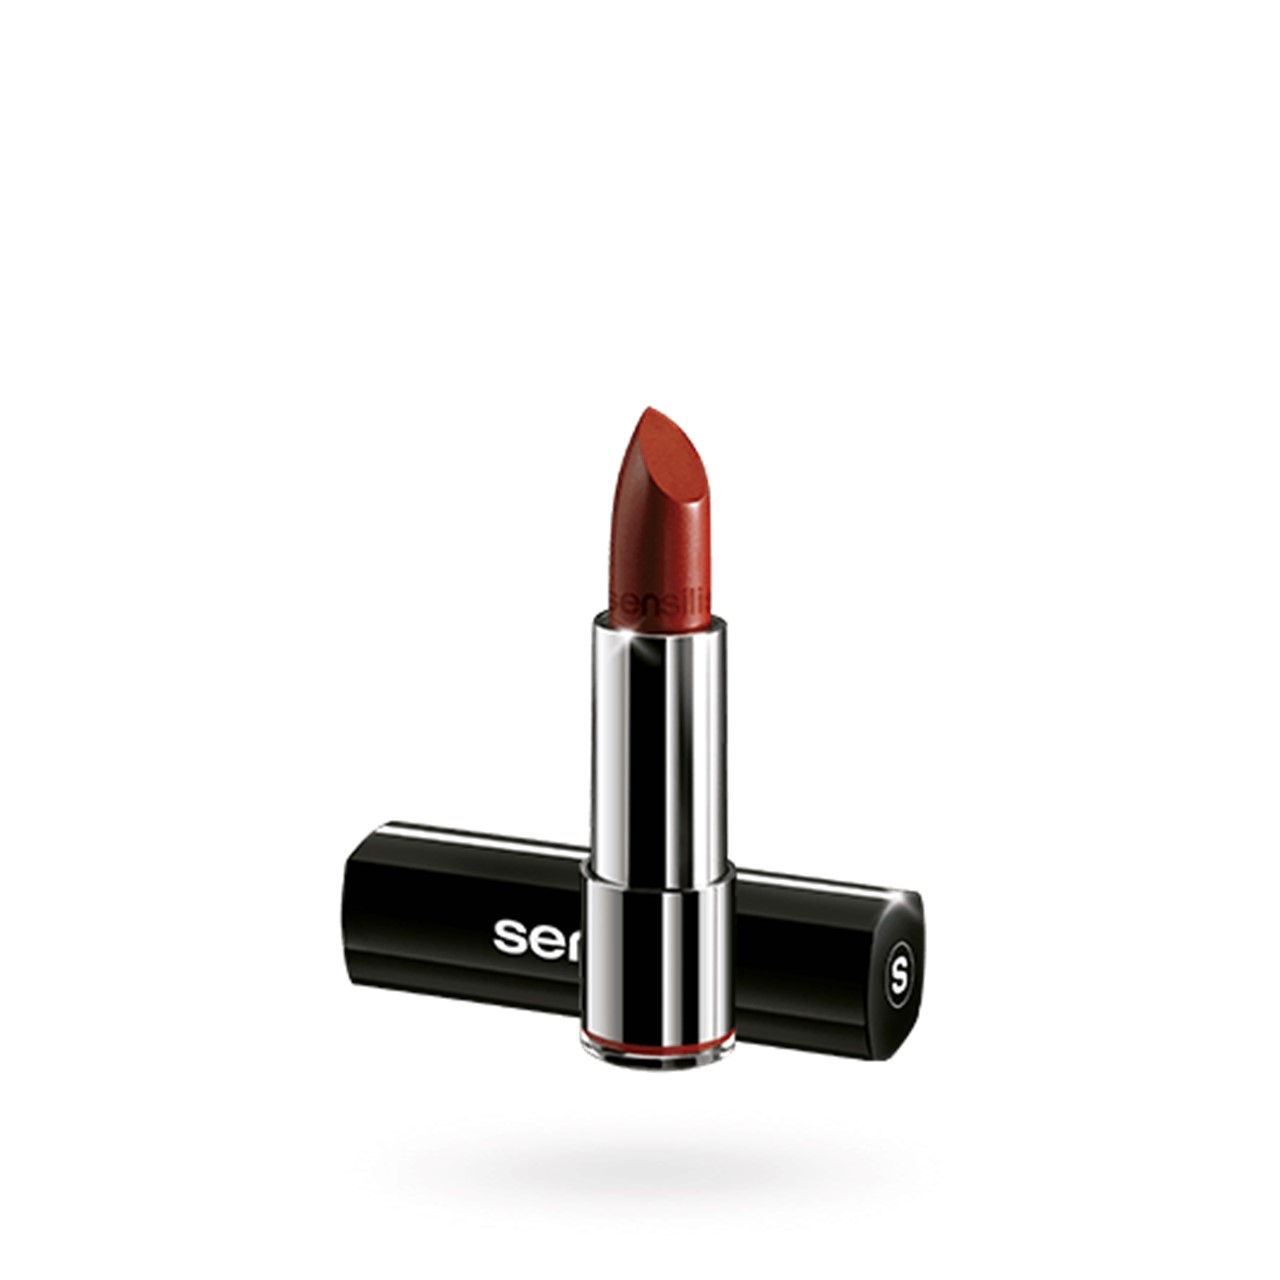 Sensilis Velvet Satin Comfort Lipstick 211 Grenadine 3.5ml